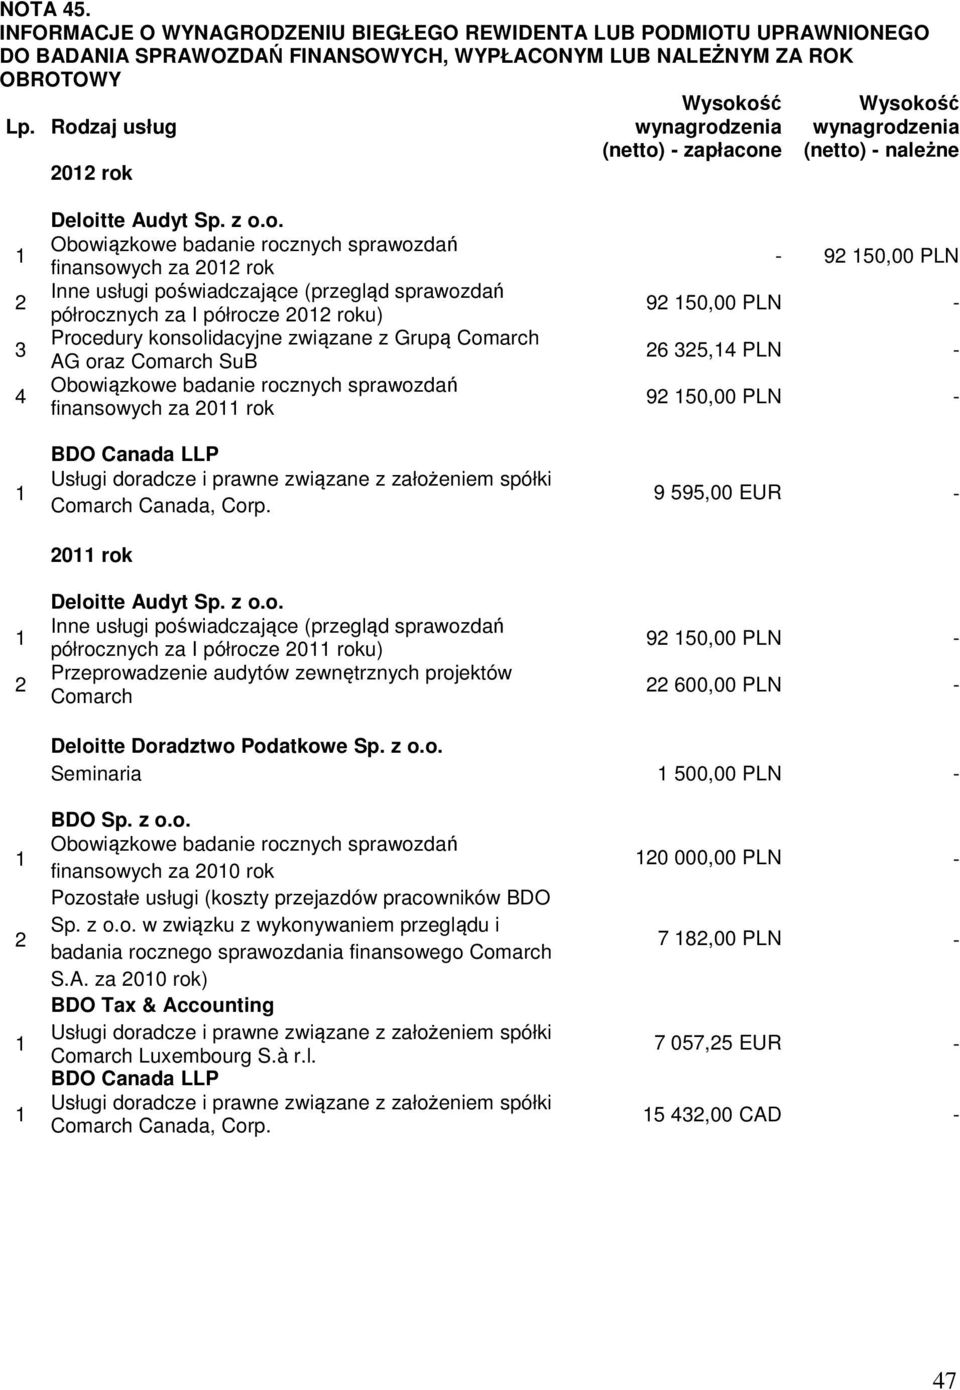 za 2012 rok Inne usługi poświadczające (przegląd sprawozdań półrocznych za I półrocze 2012 roku) Procedury konsolidacyjne związane z Grupą Comarch AG oraz Comarch SuB Obowiązkowe badanie rocznych